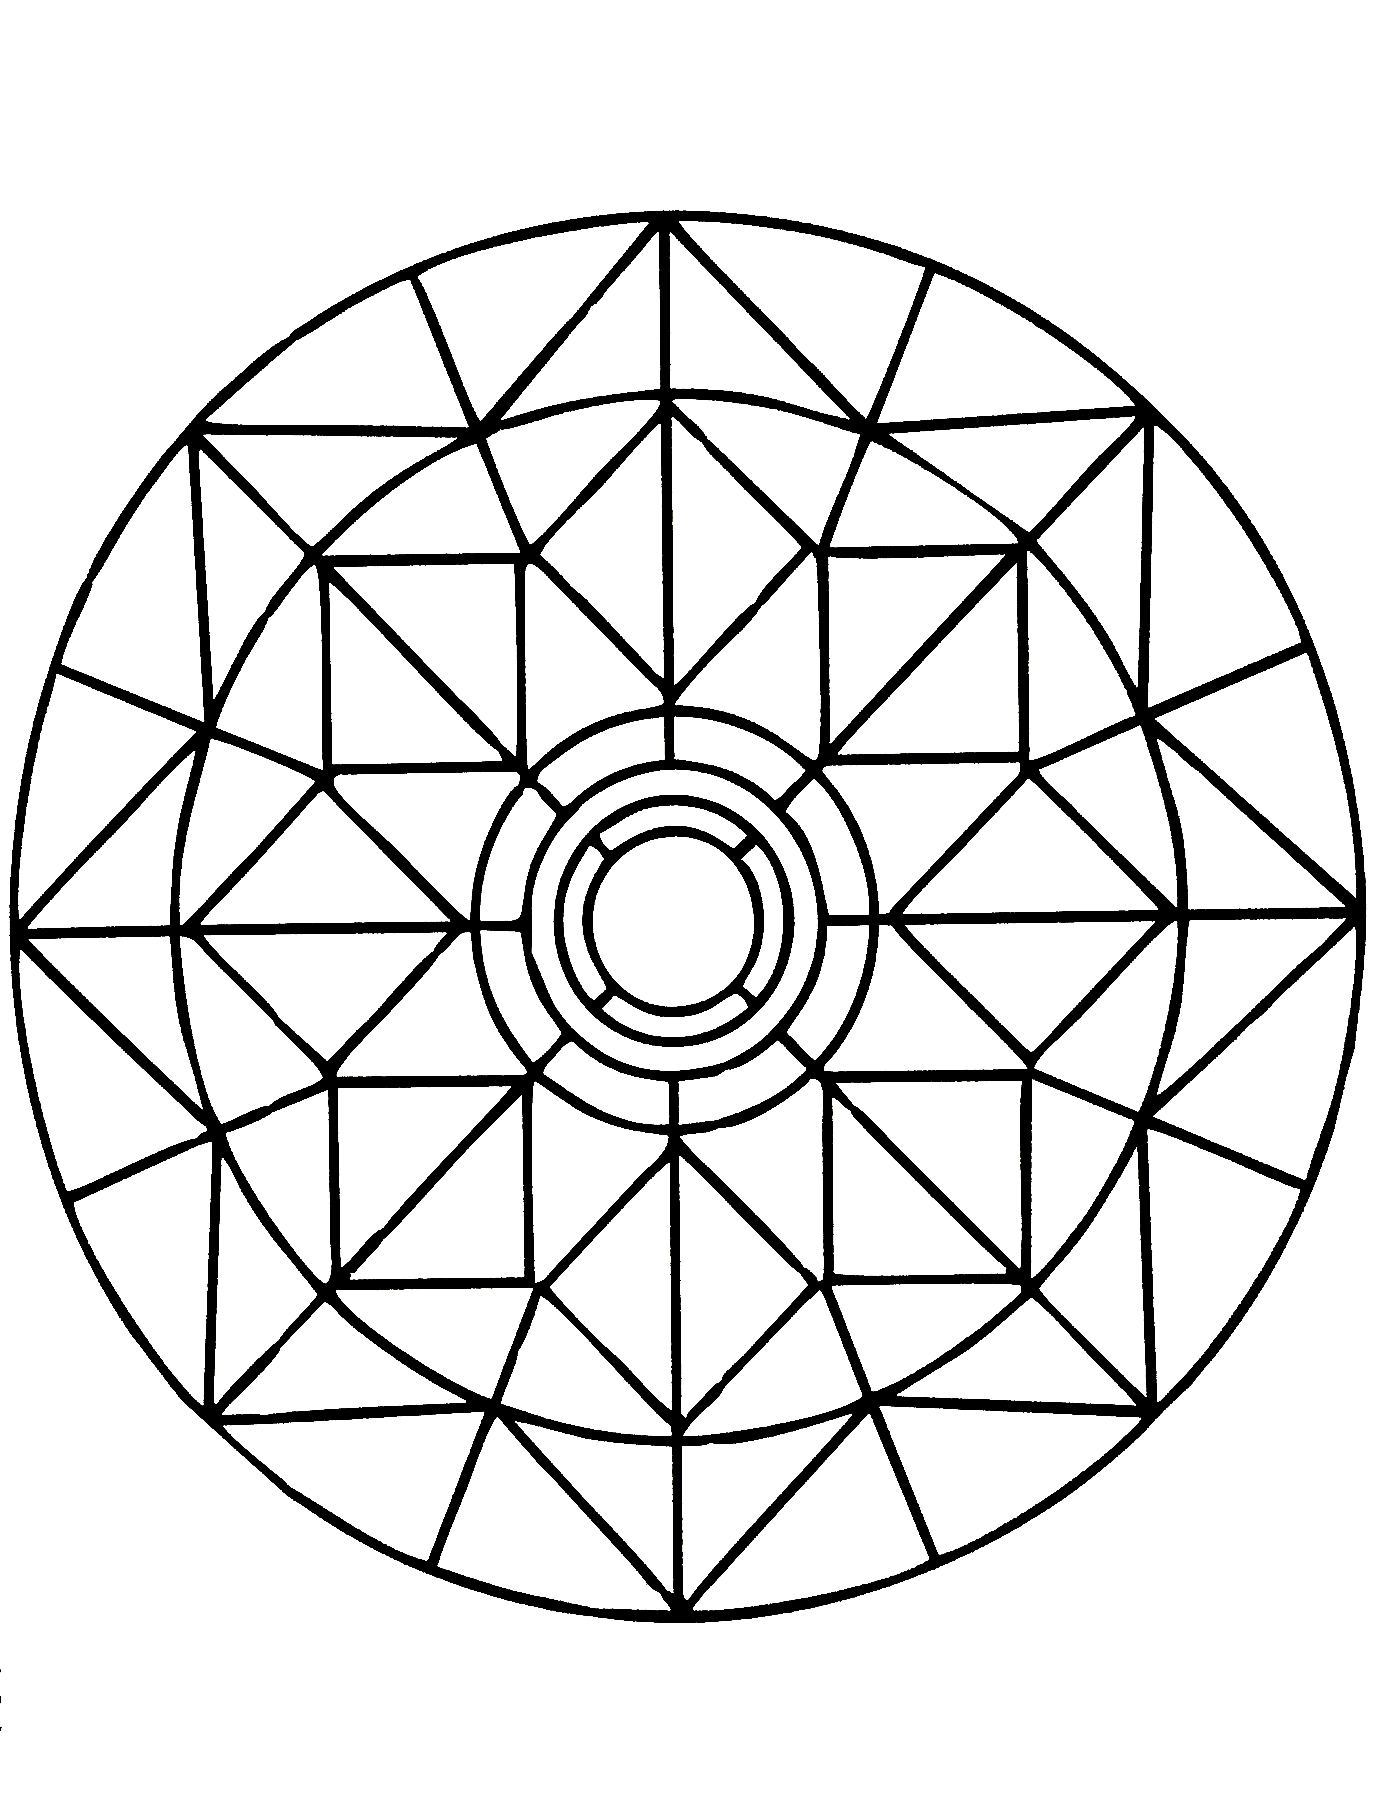 Rilassatevi per qualche minuto con questo superbo Mandala composto da forme altamente simmetriche, geometriche e armoniose.